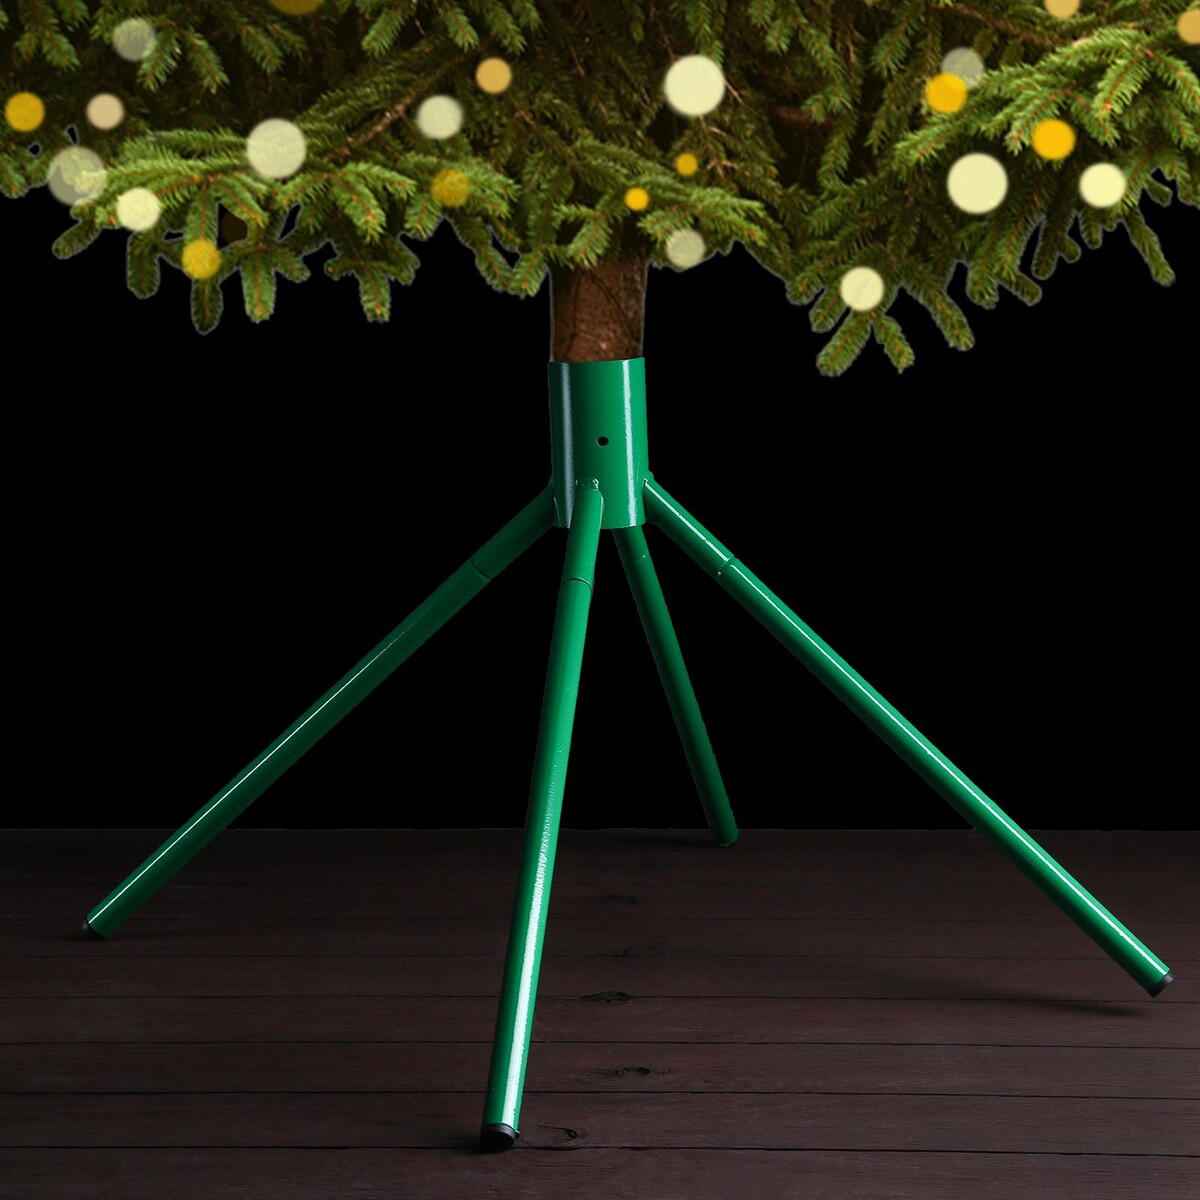 Подставка для елки (под емкость с водой), диаметр 5 см, цвет зеленый подставка для елки под емкость с водой диаметр 5 см зеленый